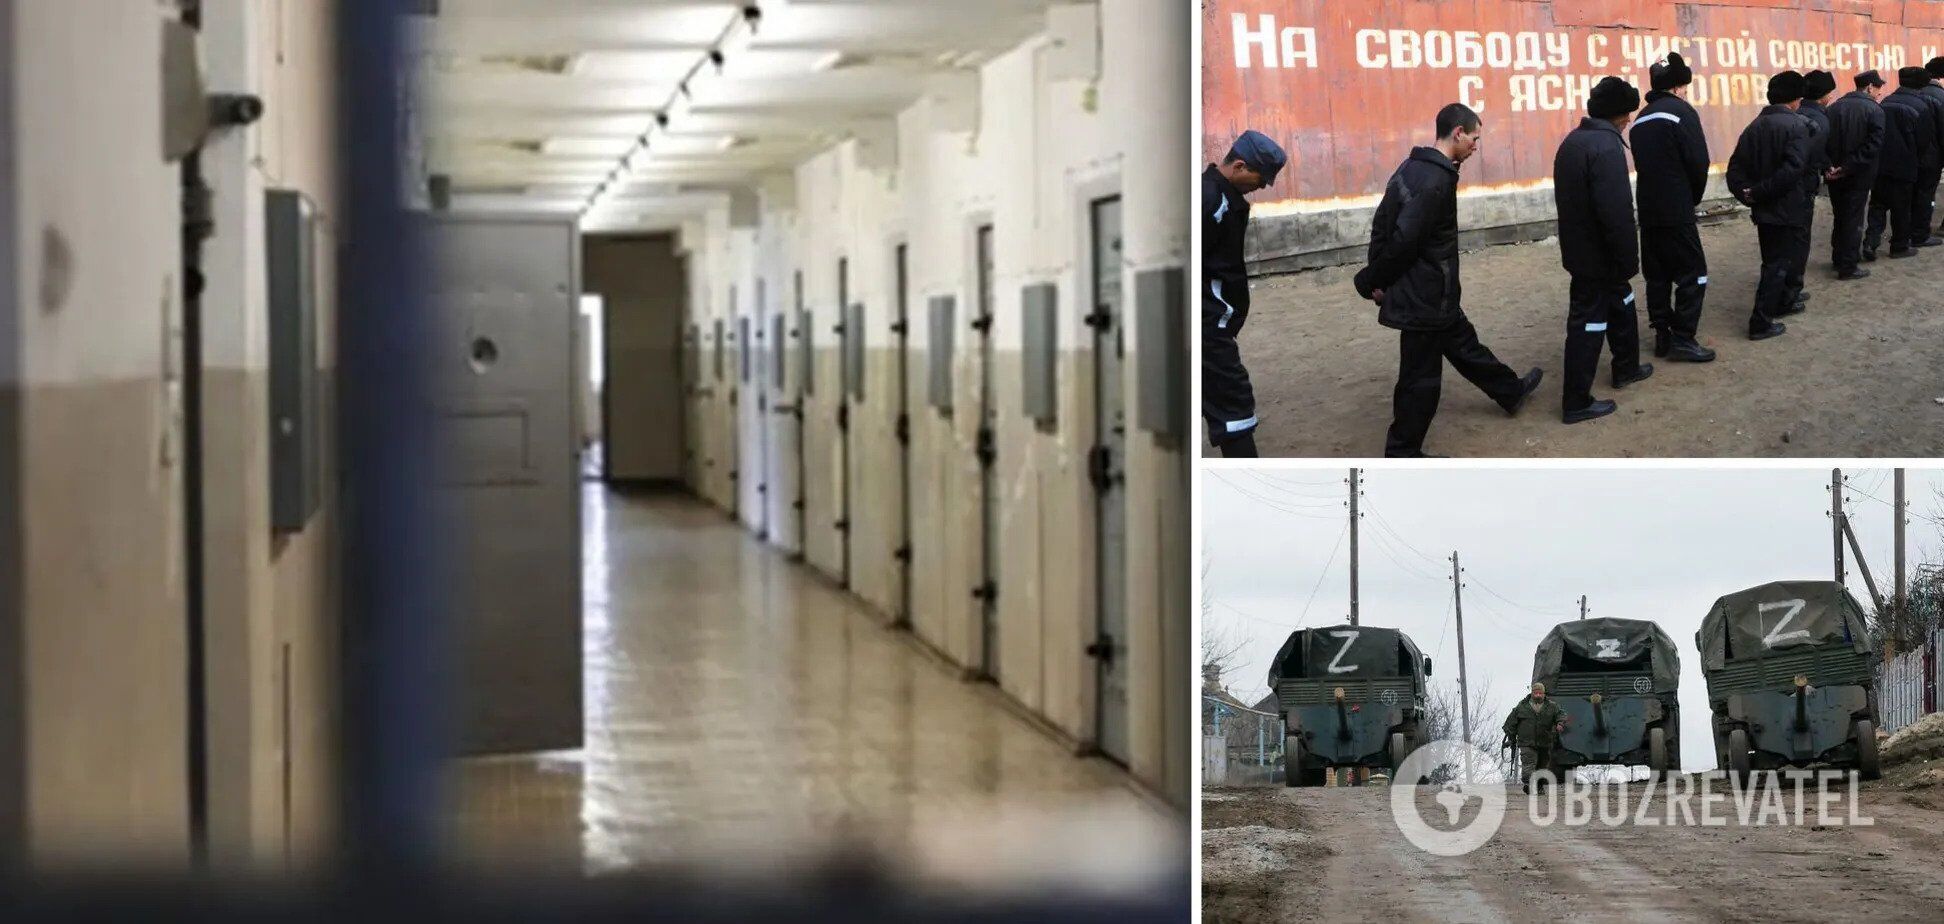 Путин тайно приказал продолжить вербовку заключенных на войну против Украины – СМИ